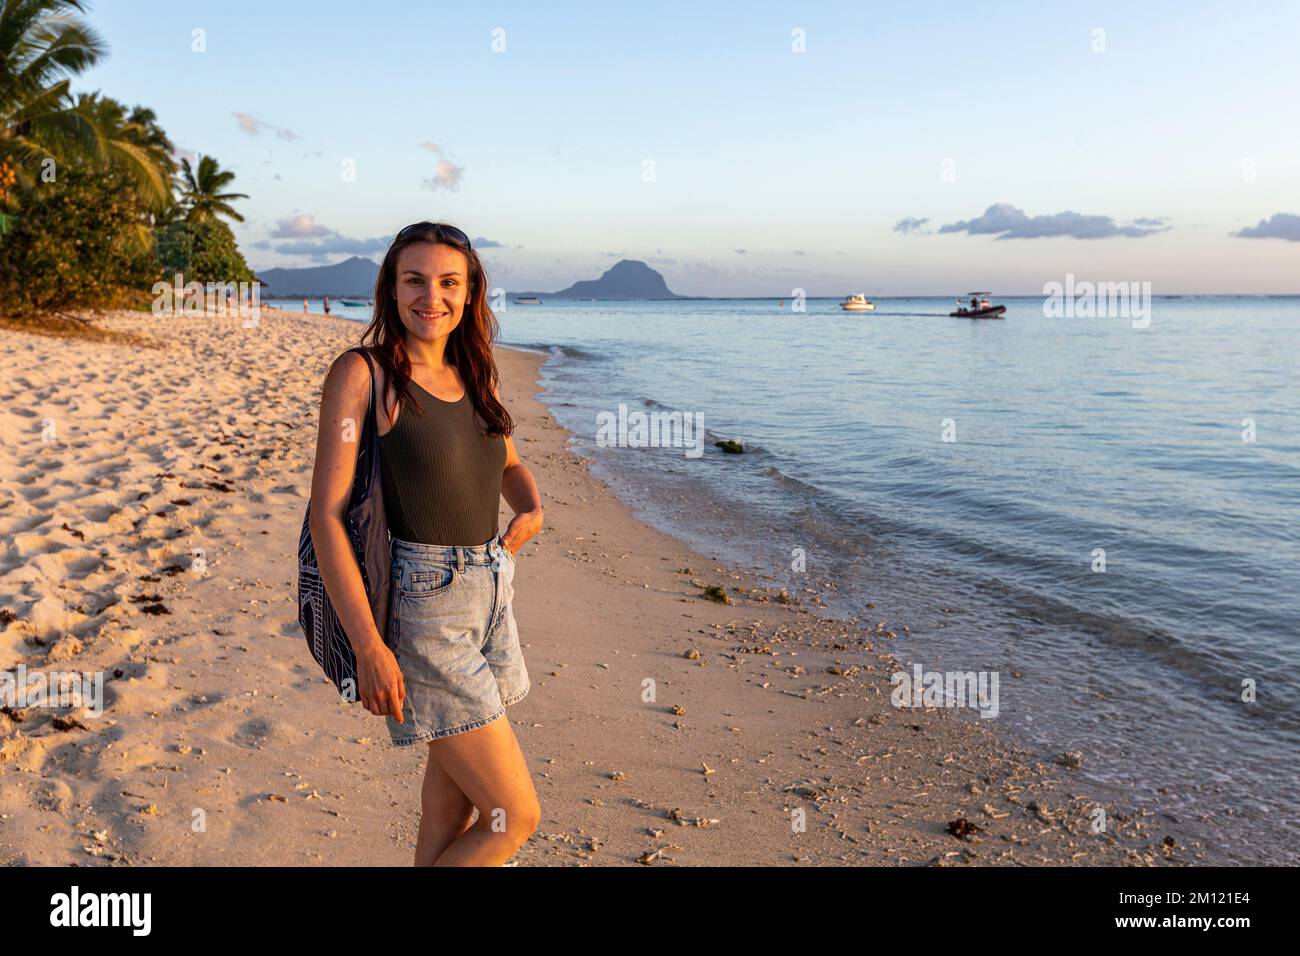 Eine junge Dame, die am Strand von Flic en flac auf mauritius Island, afrika posiert Stockfoto